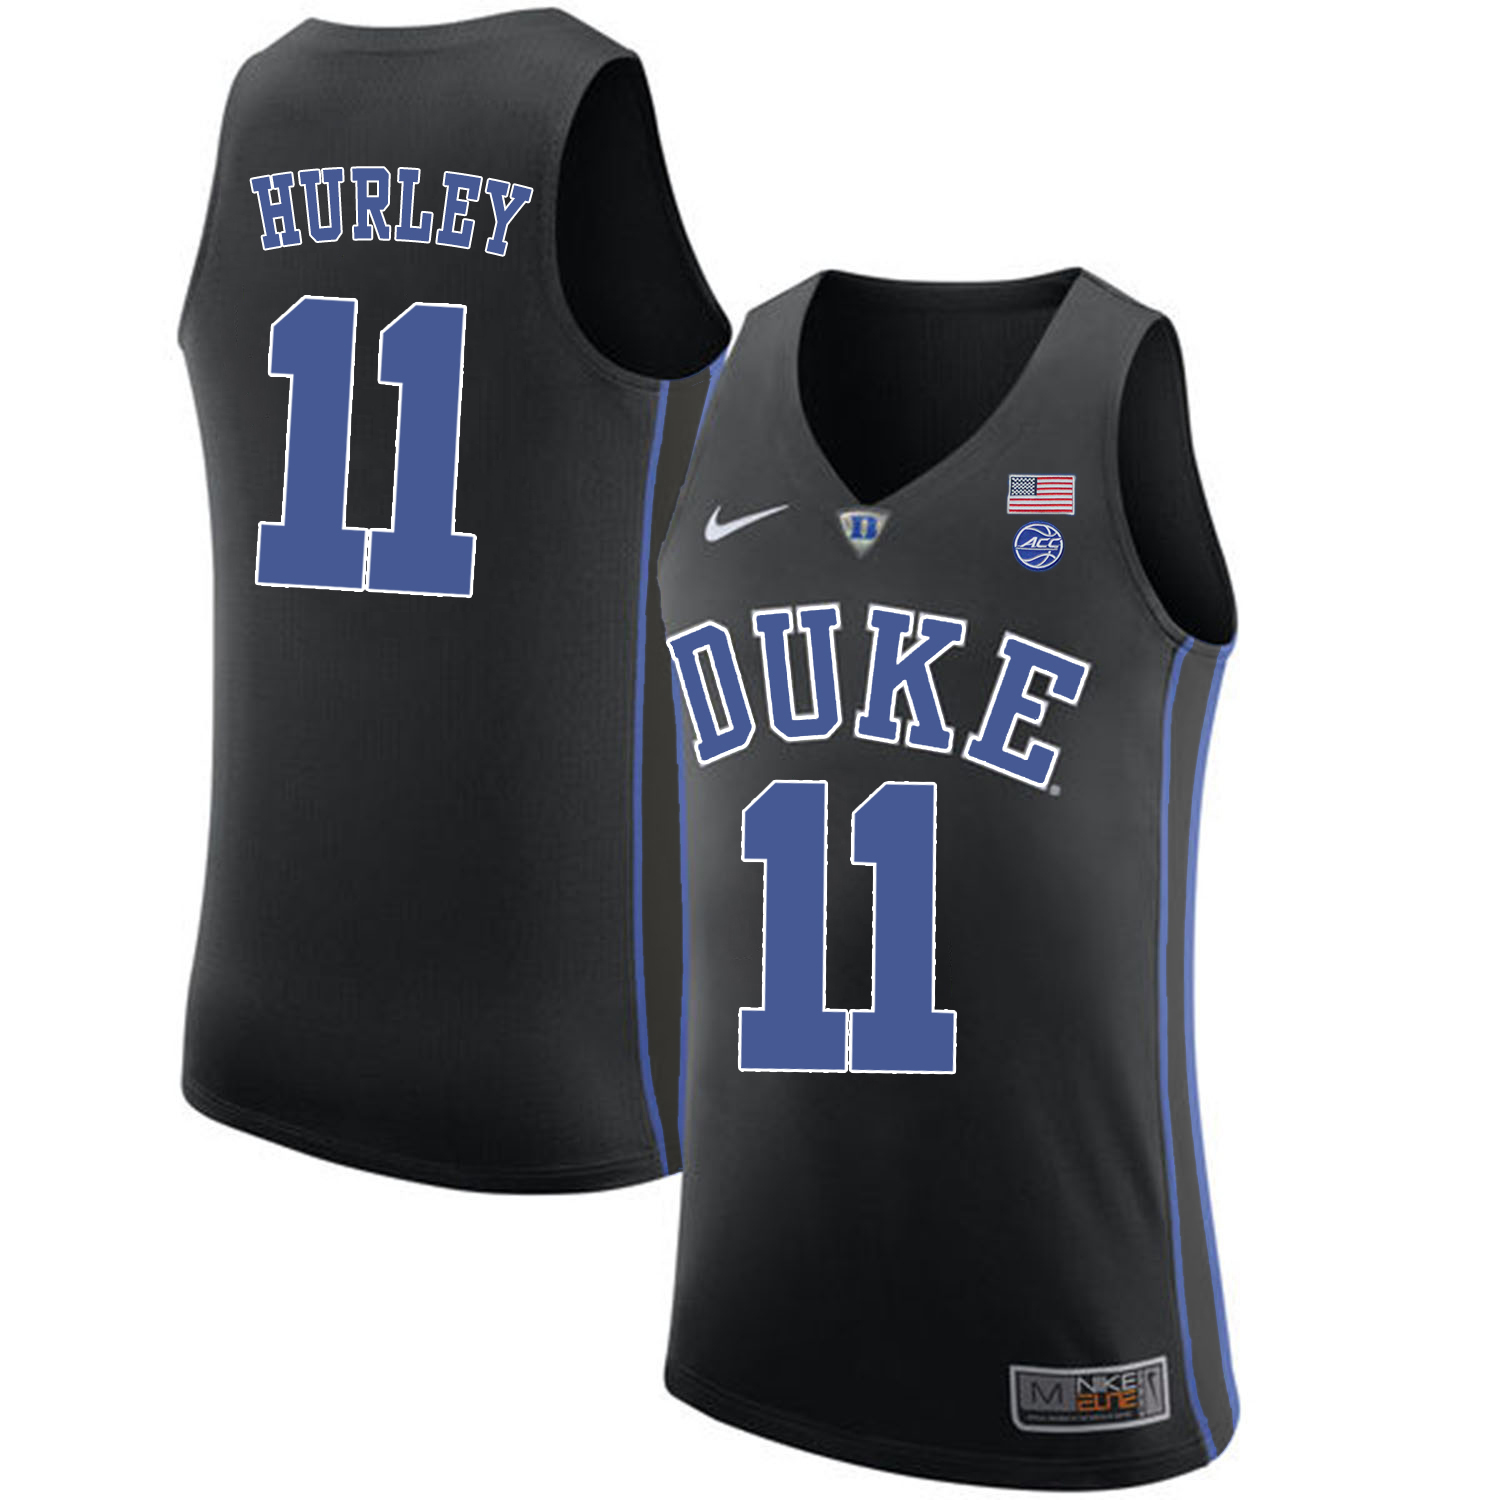 Duke Blue Devils 11 Bobby Hurley Black College Basketball Jersey